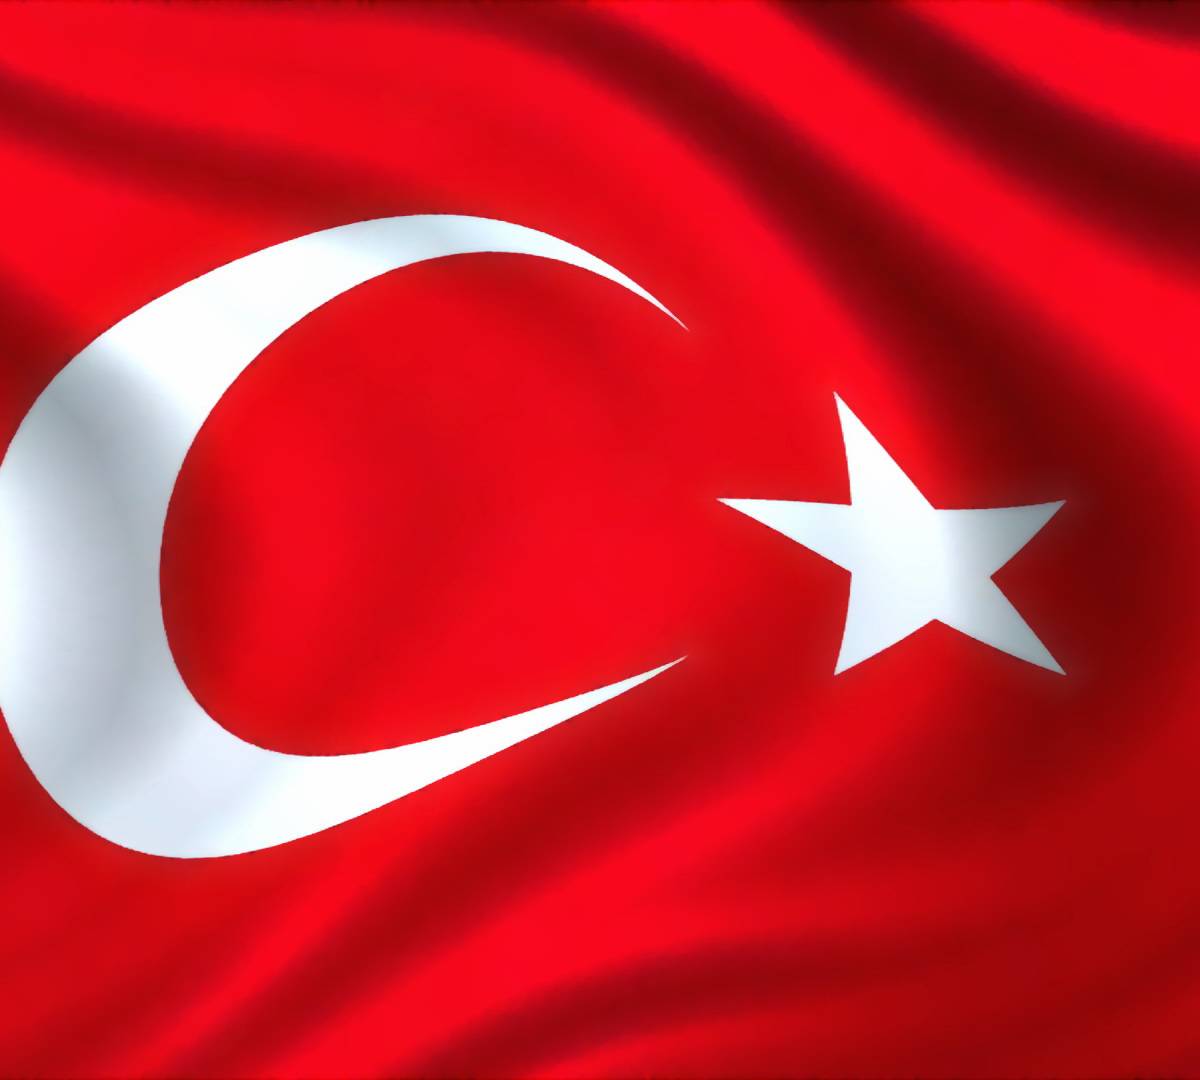 Турция не признала воссоединение Крыма с Россией